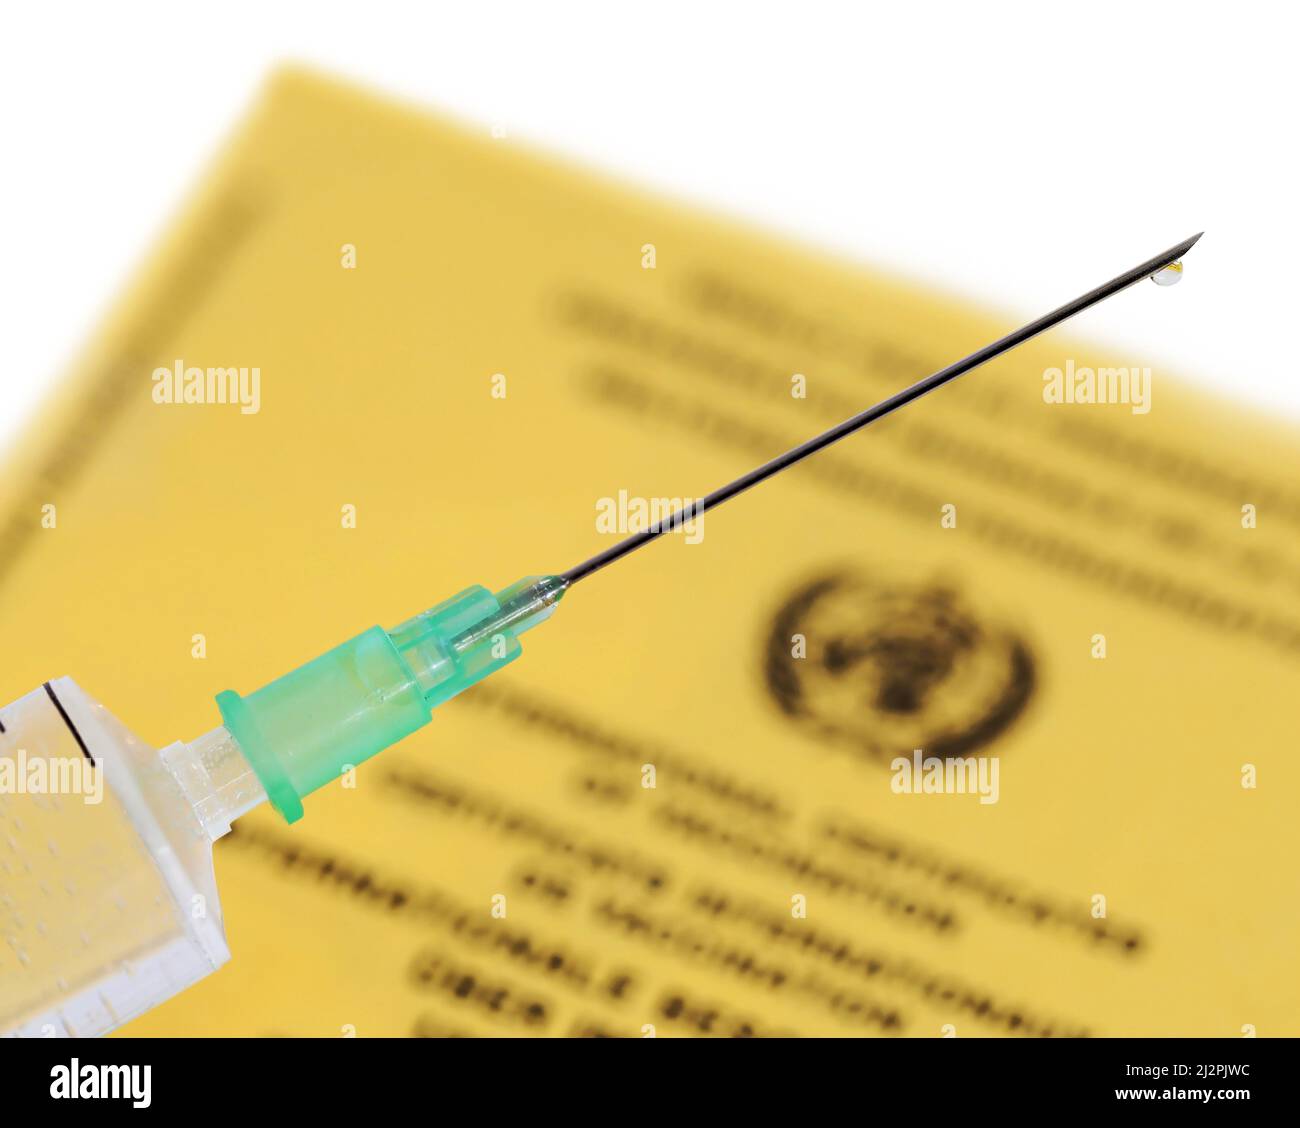 siringa medica riempita con vaccino e certificato di vaccinazione internazionale giallo su sfondo bianco, primo piano di un ago di vaccinazione Foto Stock